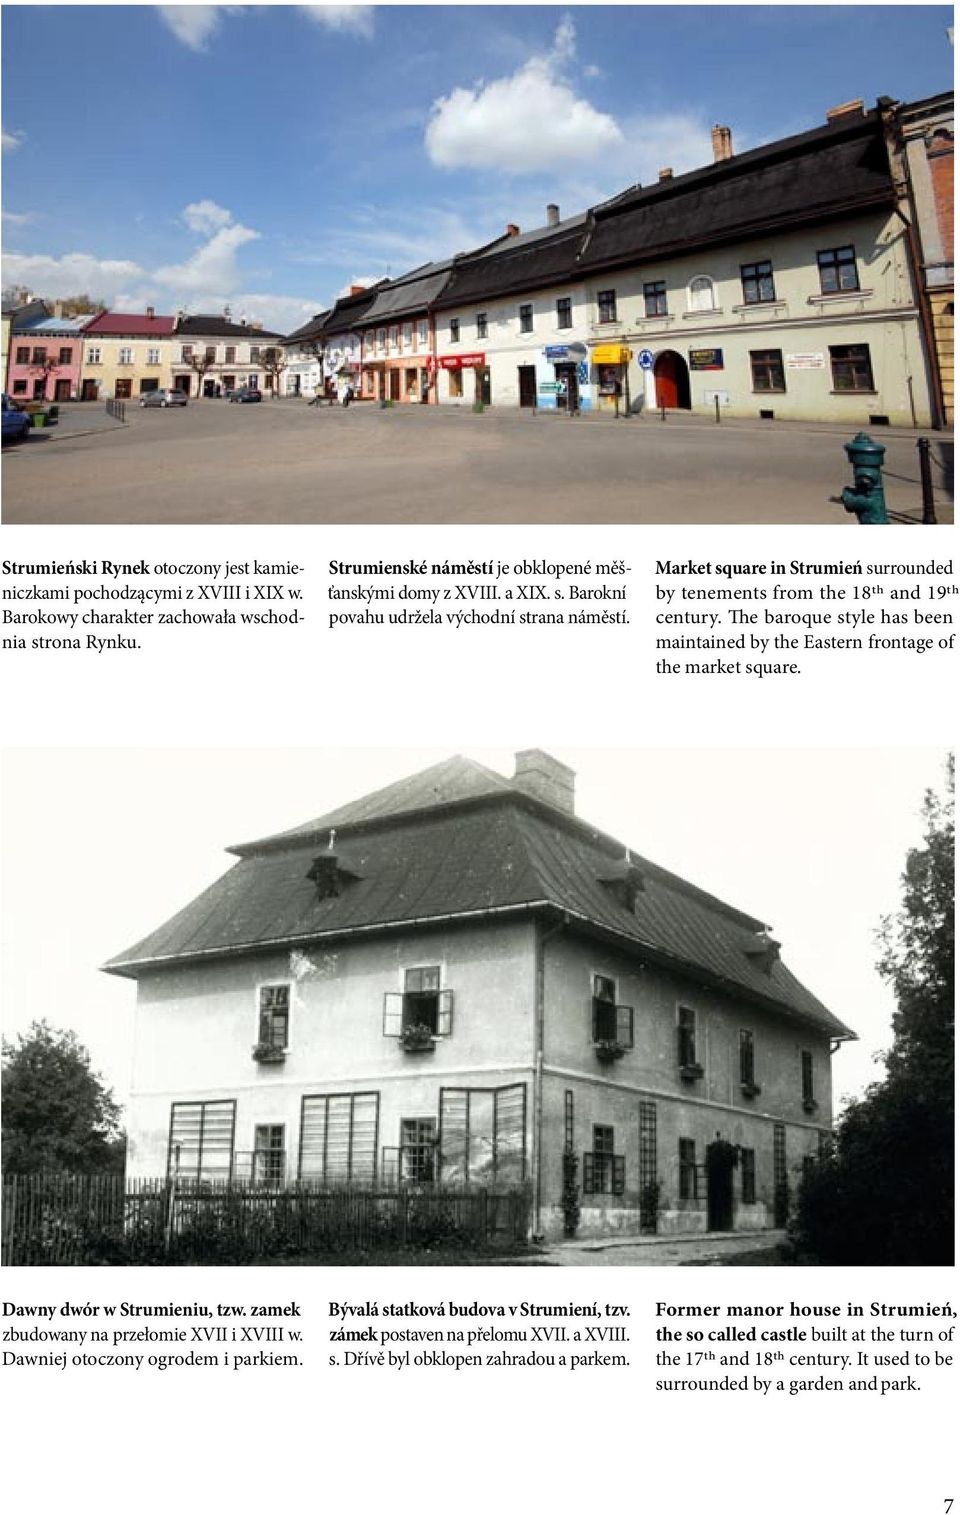 zamek zbudowany na przełomie XVII i XVIII w. Dawniej otoczony ogrodem i parkiem. Bývalá statková budova v Strumiení, tzv. zámek postaven na přelomu XVII. a XVIII. s. Dřívě byl obklopen zahradou a parkem.